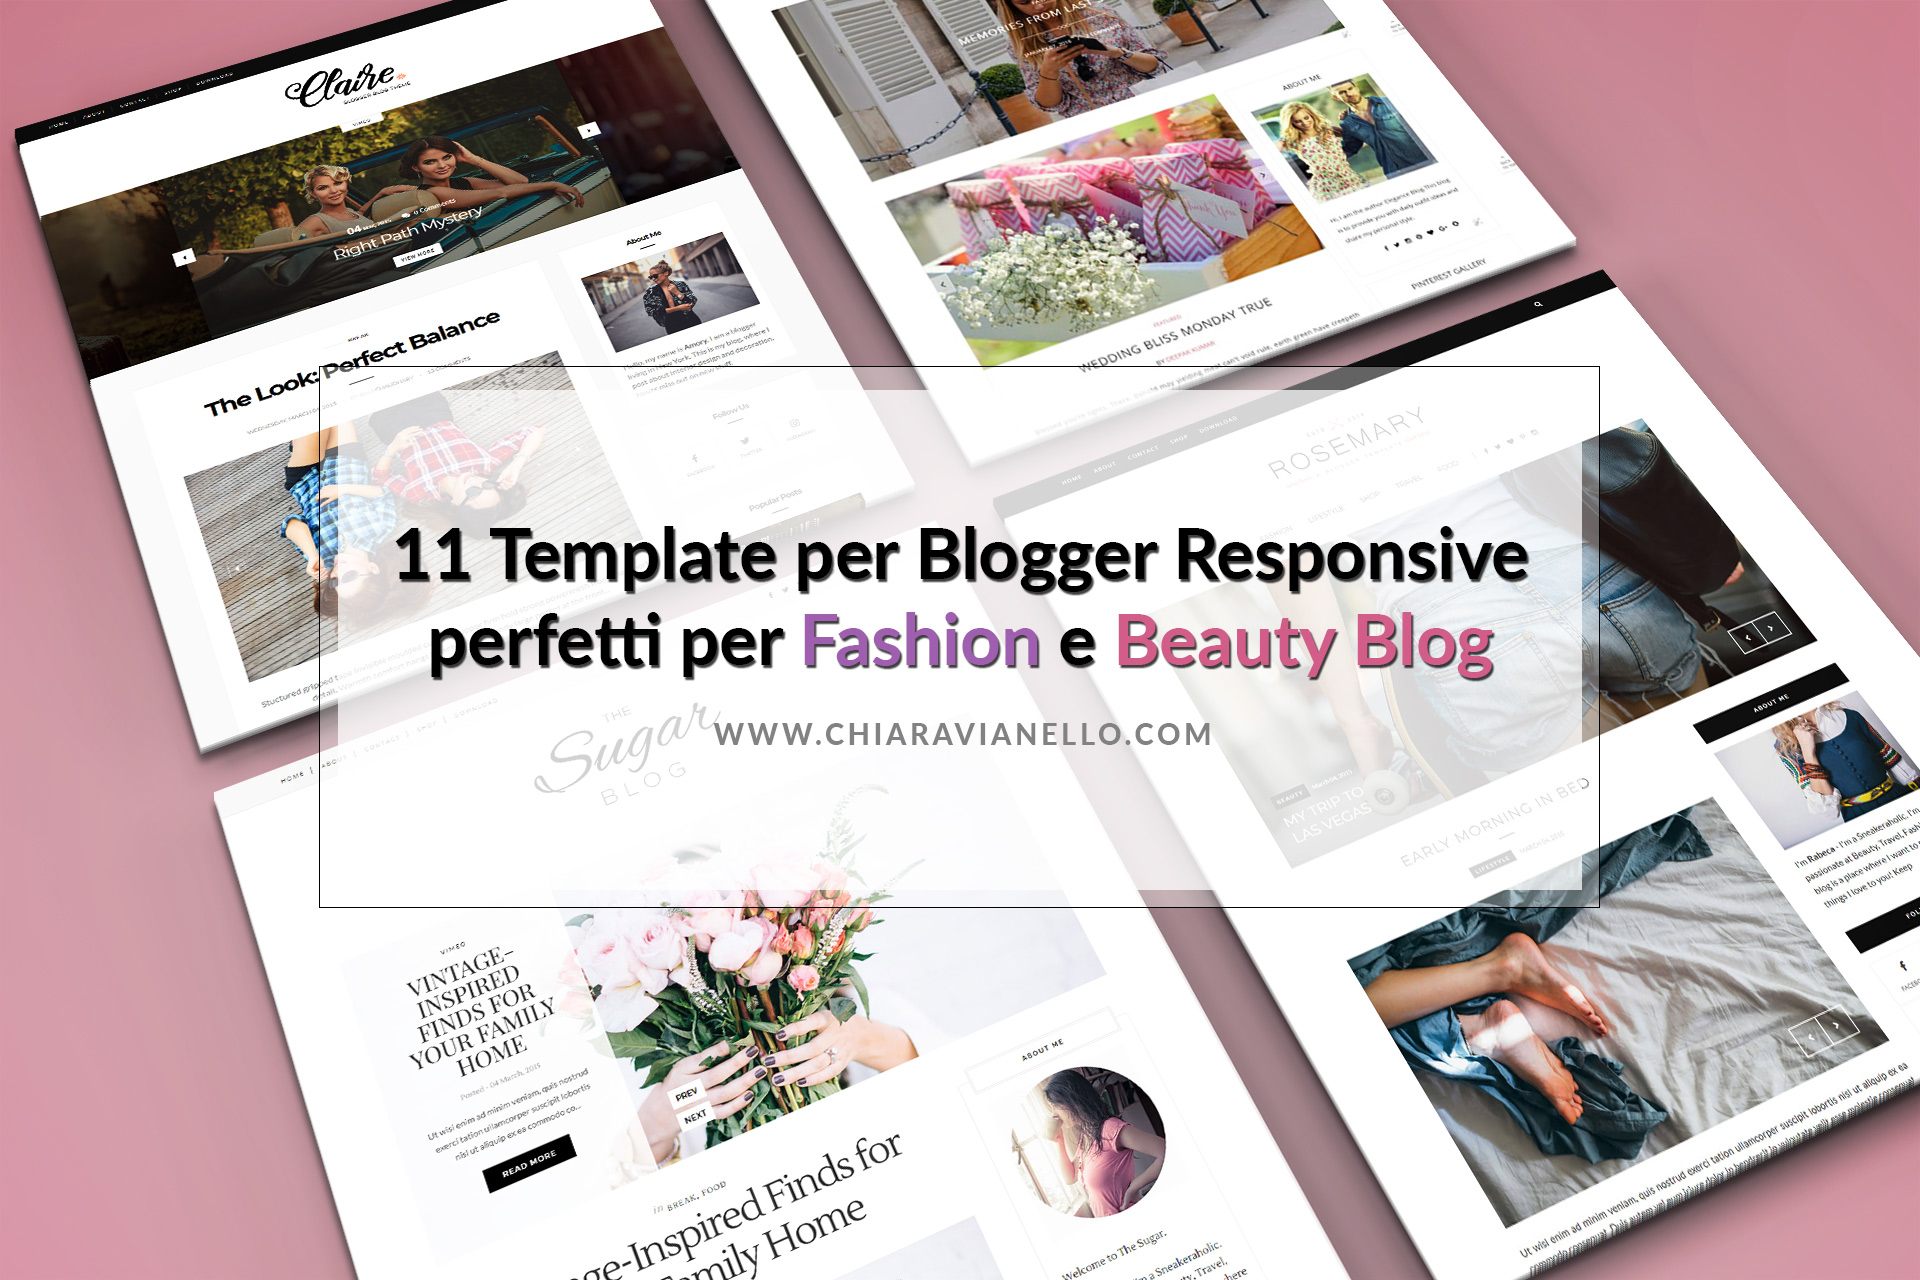 11 Template per Blogger Responsive gratuiti per Fashion e Beauty Blog